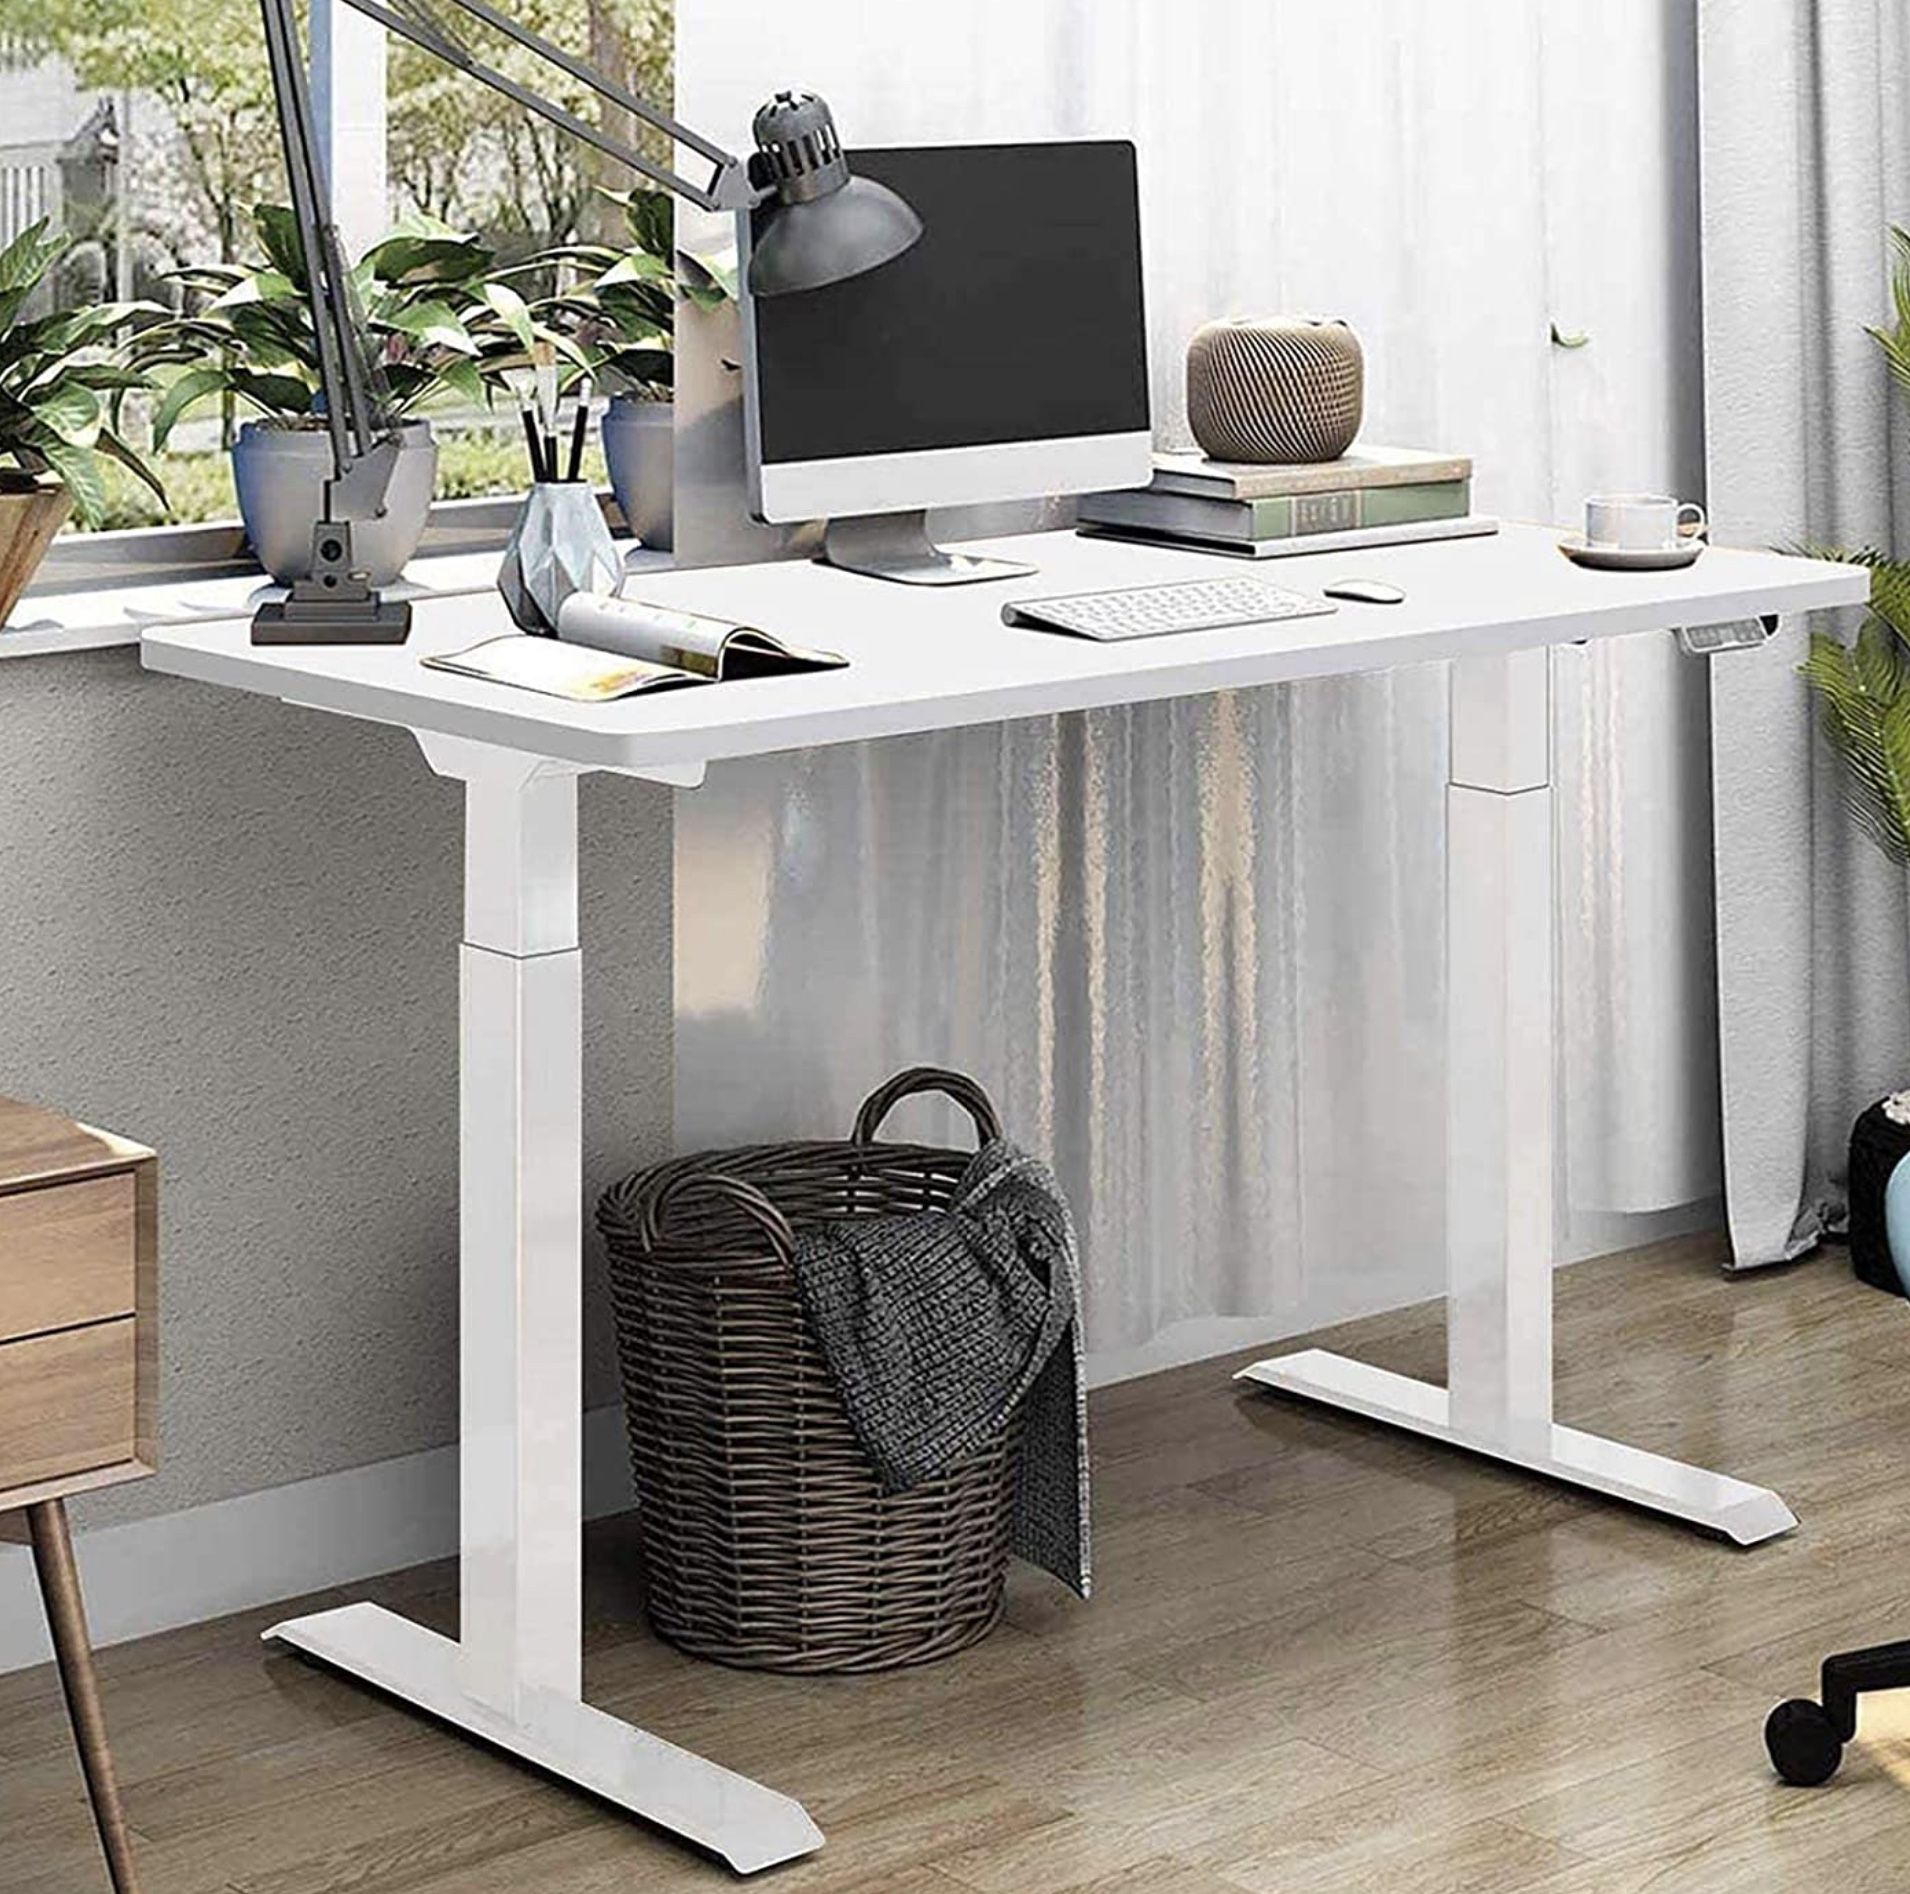 SANODESK Basic Line elektrisch stufenlos höhenverstellbarer Schreibtisch mit Kollisionschutz für 239,99€ (statt 290€)